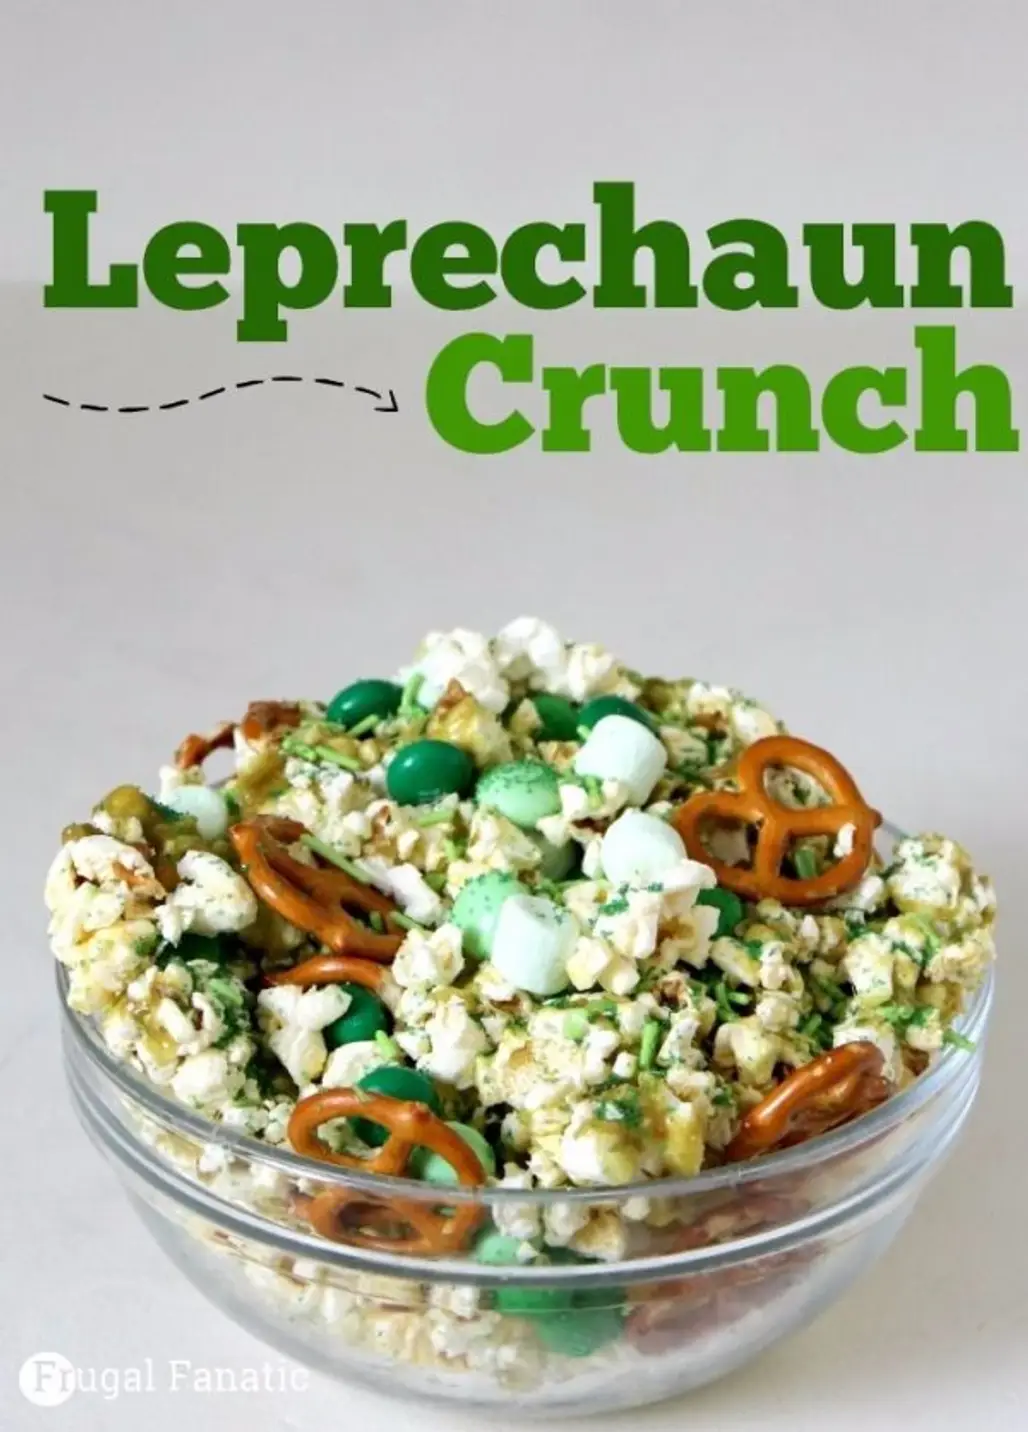 Leprechaun Crunch